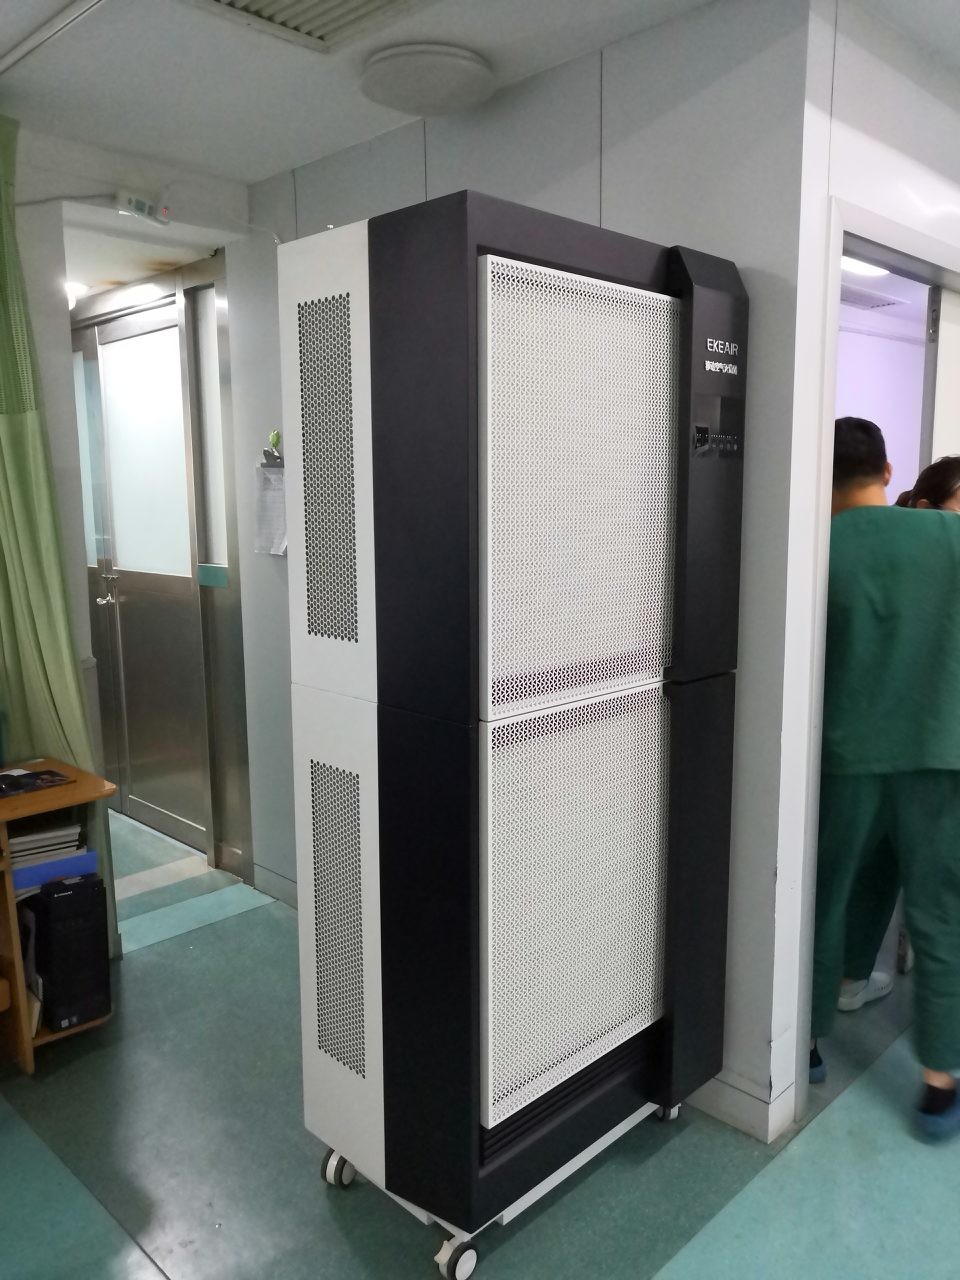 τελευταία εταιρεία περί Νοσοκομείο των επαρχιακών ανθρώπων Shanxi